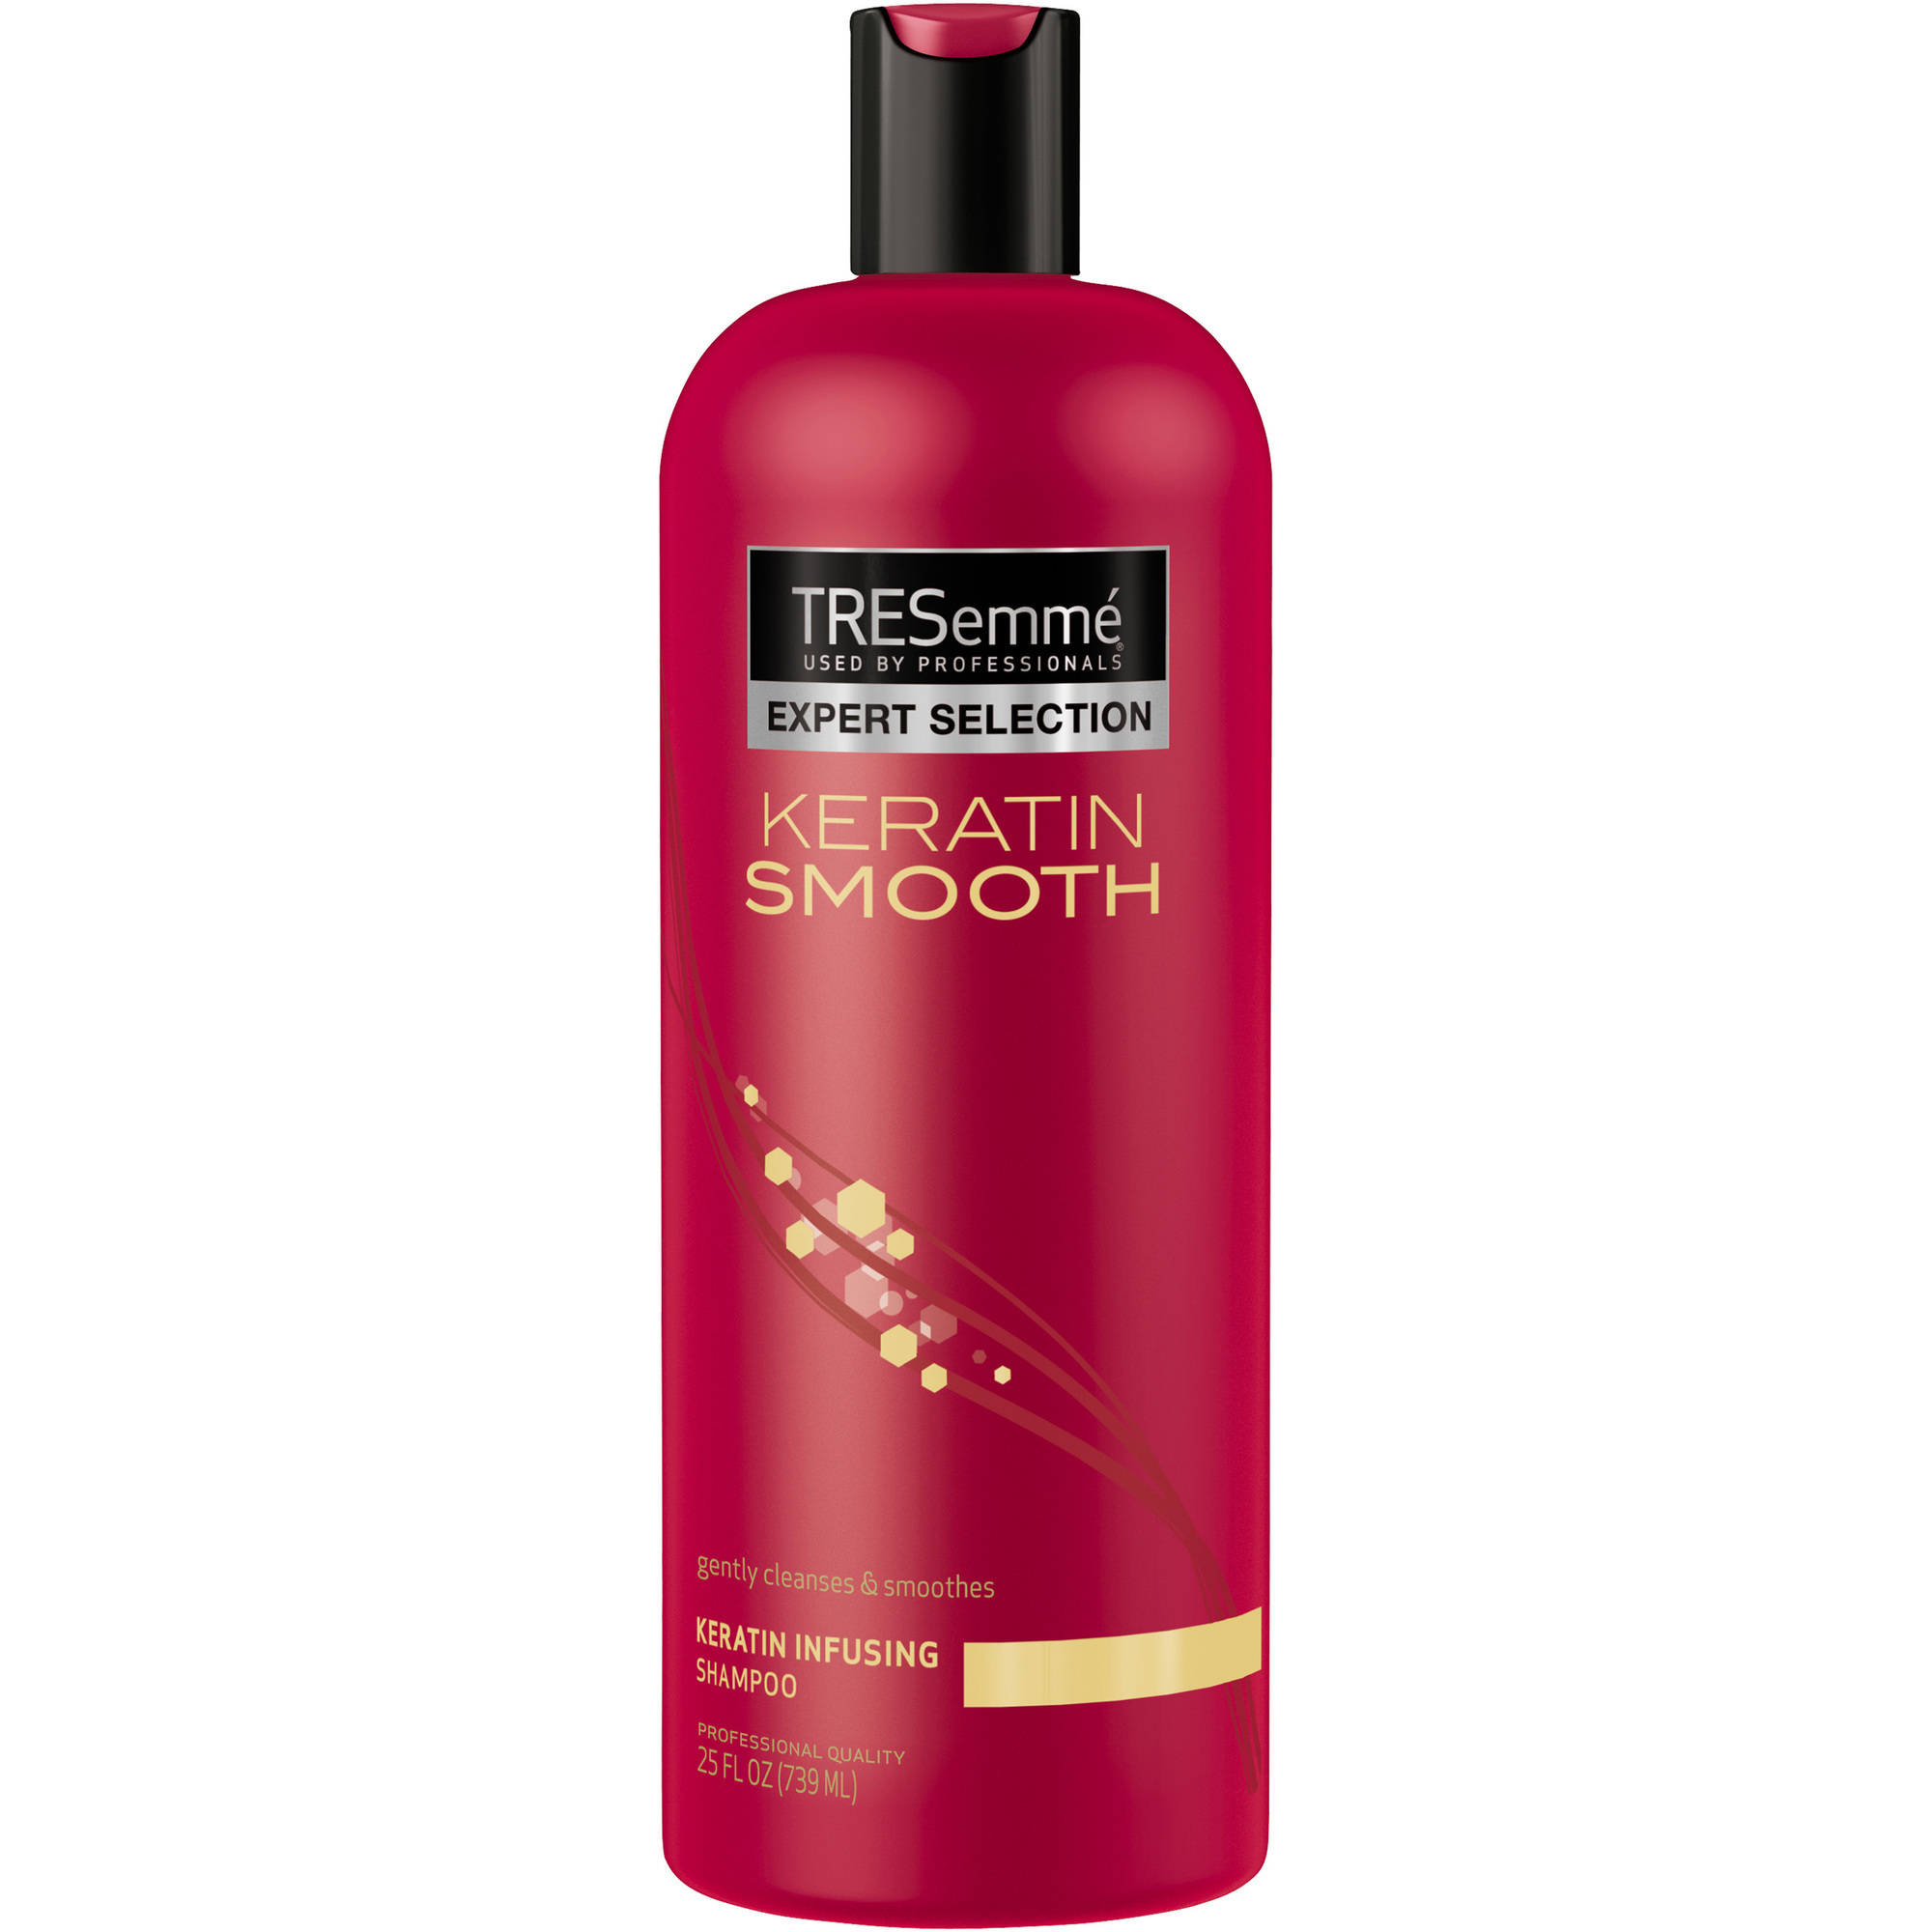 TRESemme Expert Selection Keratin Smooth Shampoo, 25 oz - image 1 of 3